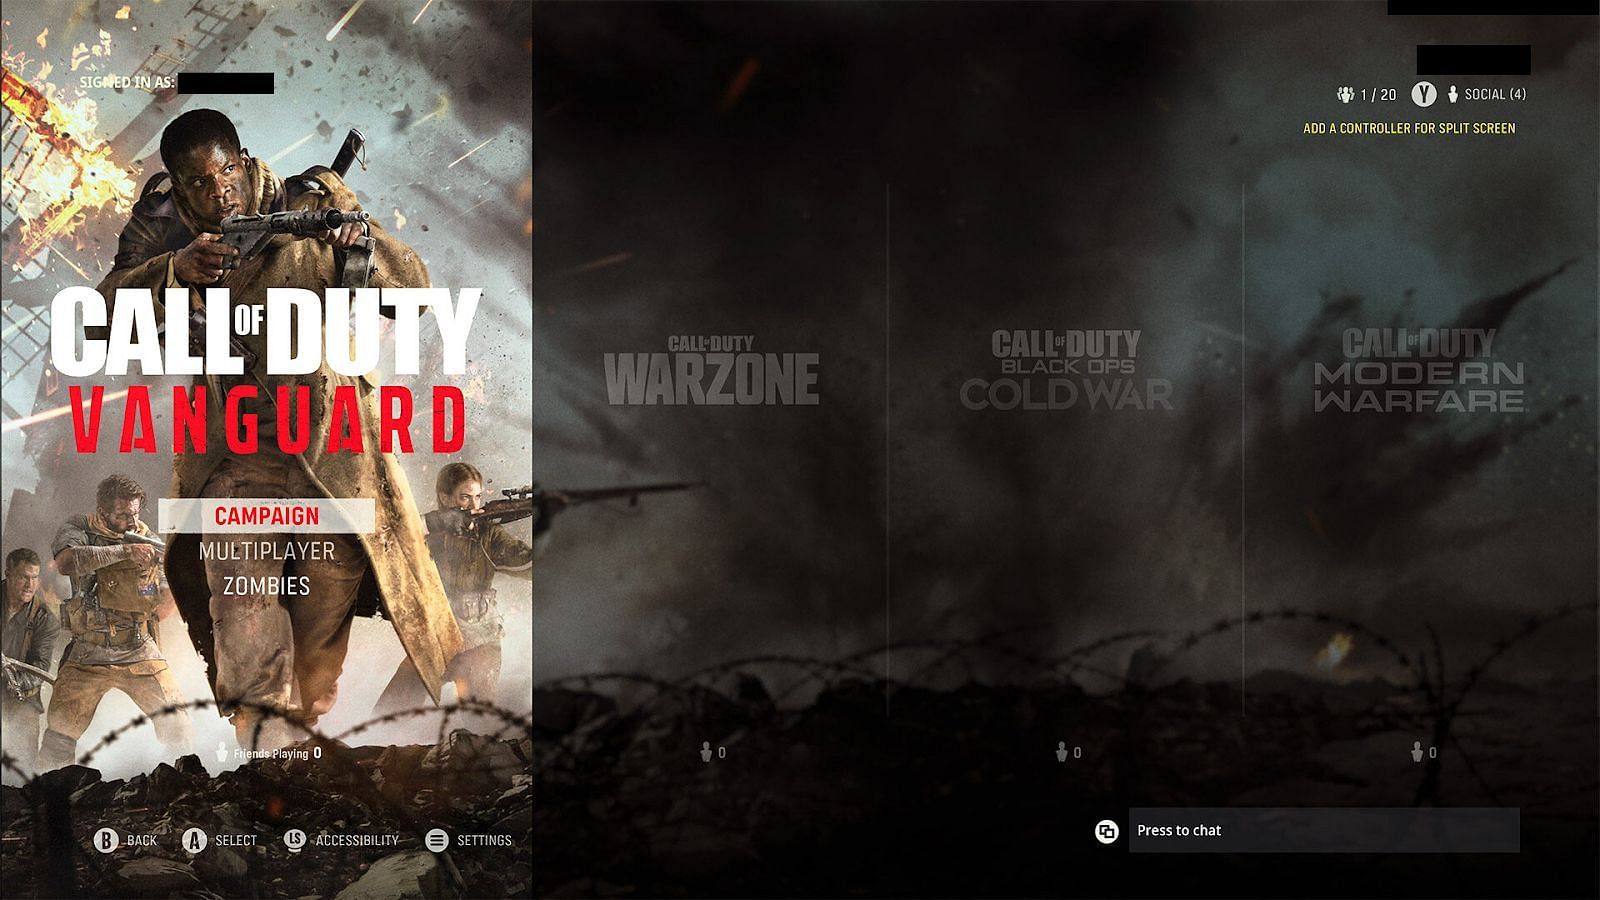 Elenco attuale con Vanguard, Warzone, Black Ops Cold War e Modern Warfare (immagine tramite Activision)